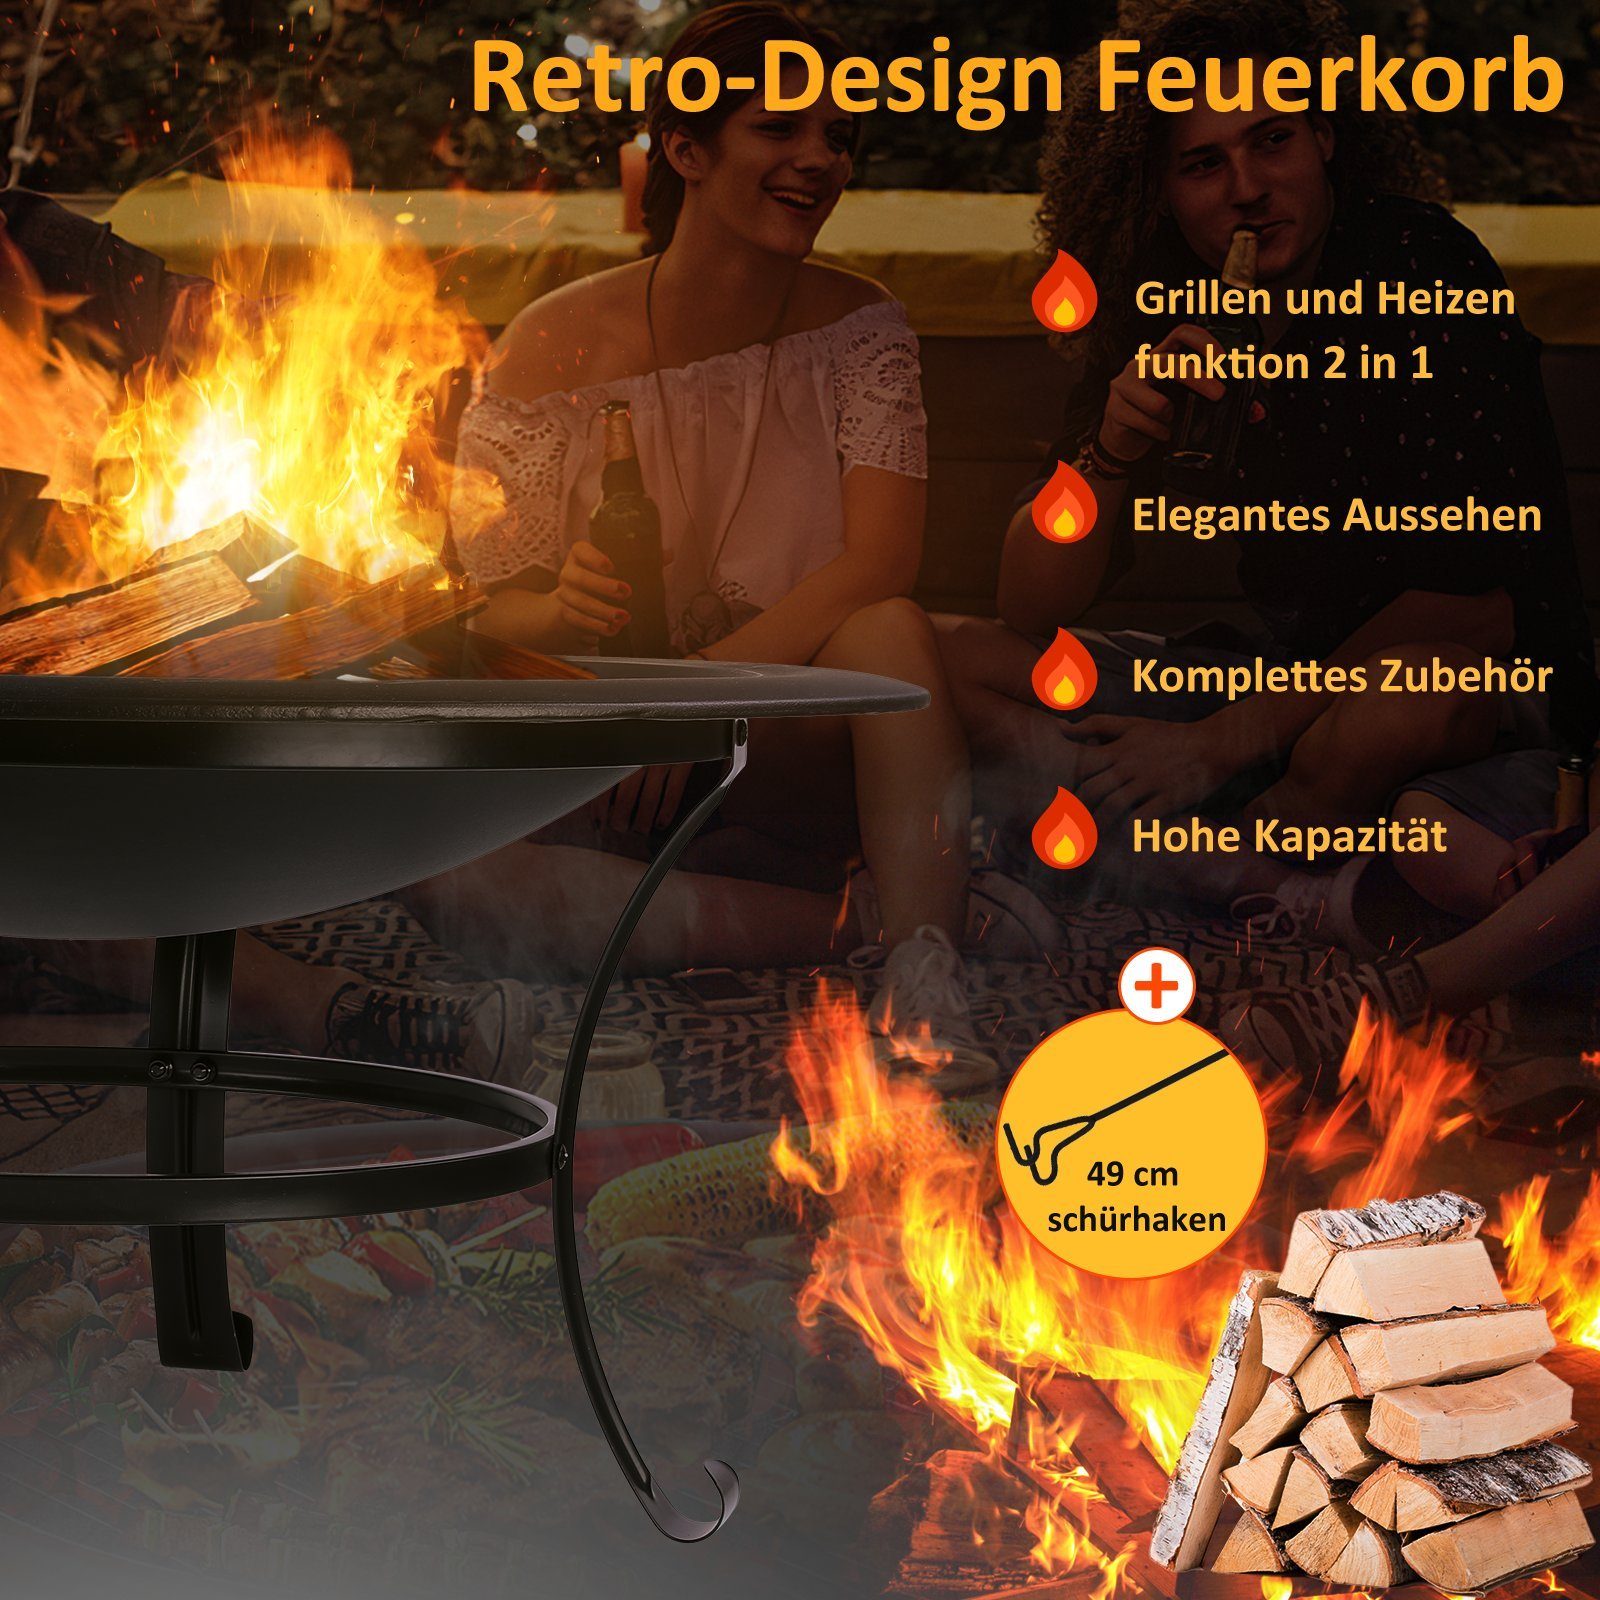 Femor Feuerschale, Feuerschale mit Grillrost, Feuerkorb Φ76cm Funkenschutz &